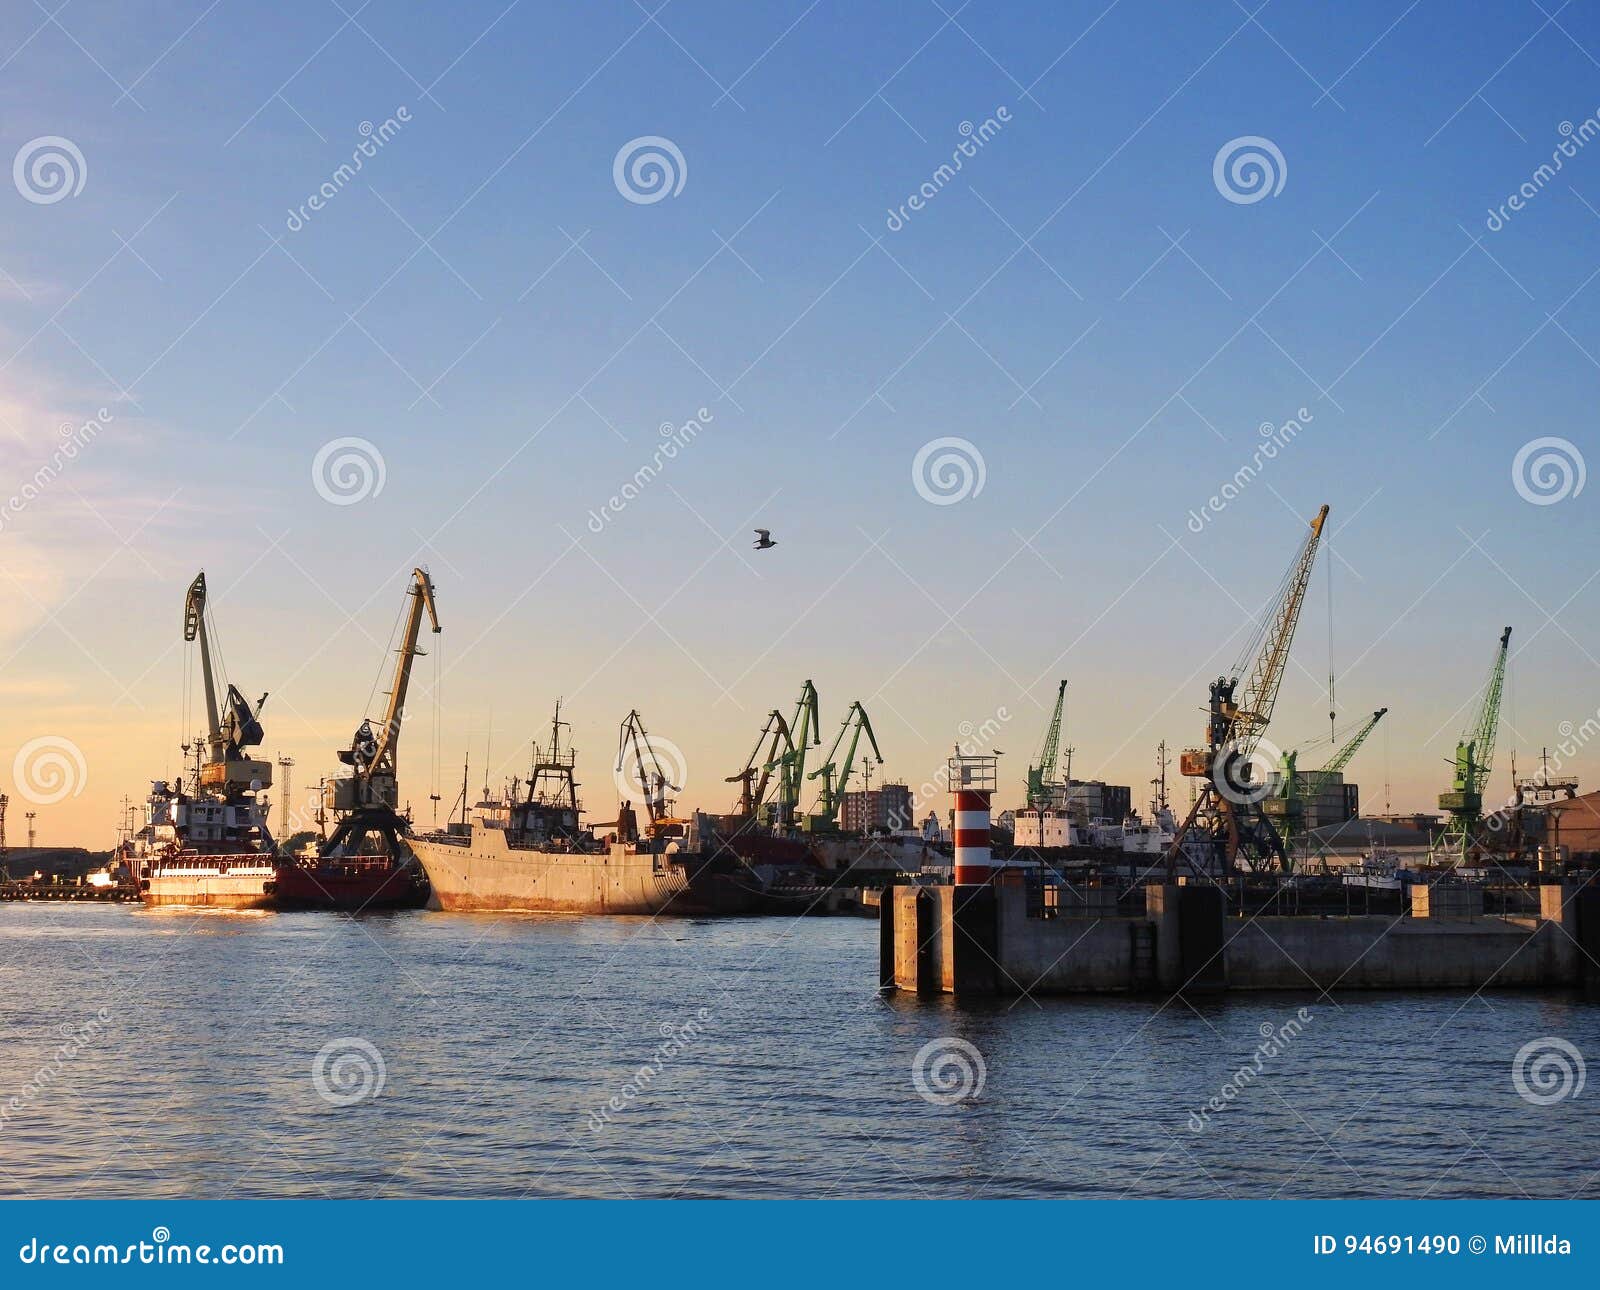 Klaipeda-Hafen, Litauen. Schiffe und Kräne in Klaipeda beherbergten in den Sonnenuntergangfarben, Litauen